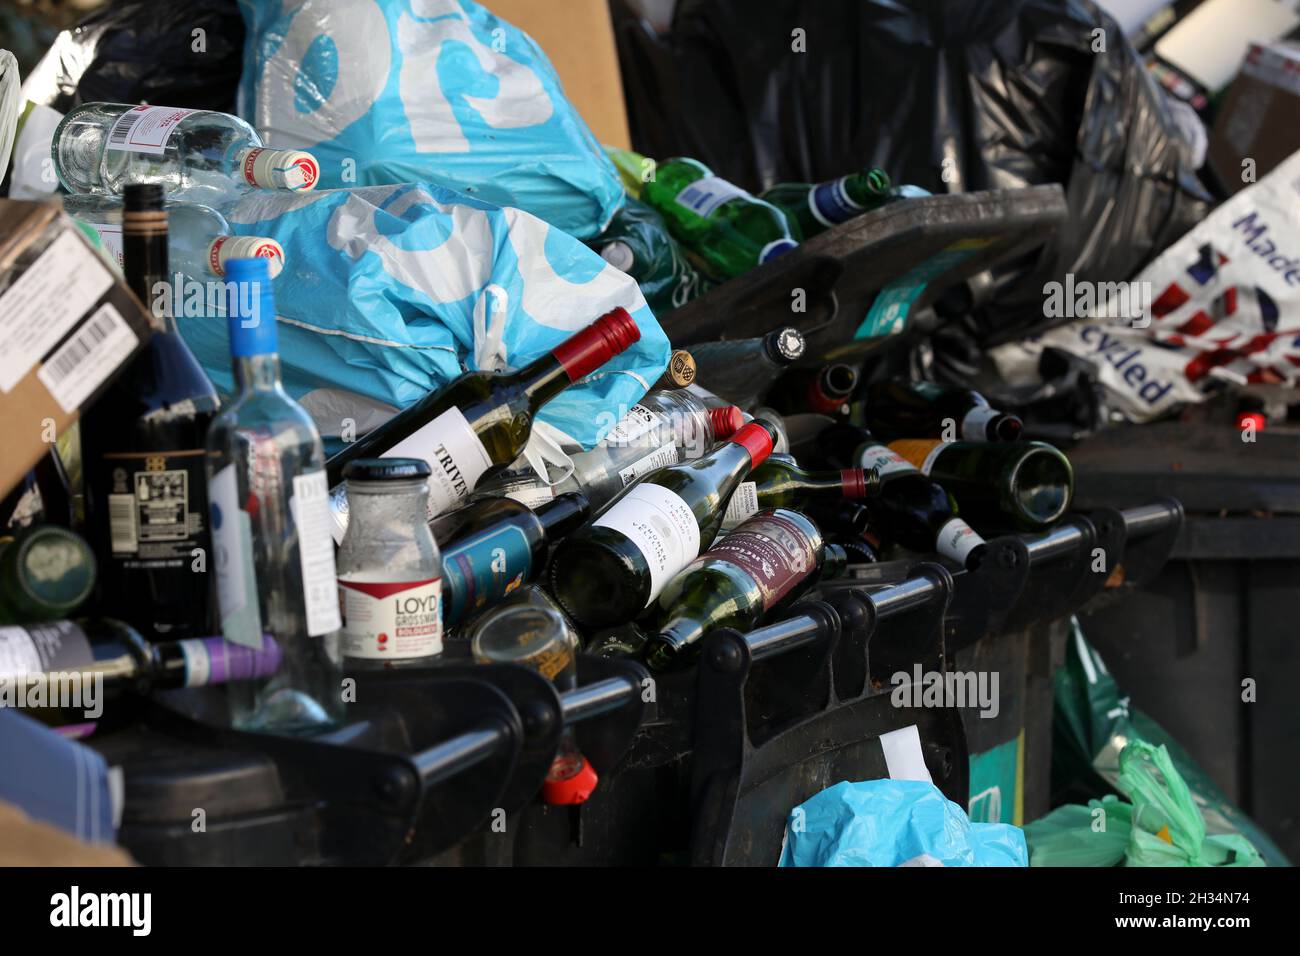 Riesige Müllhaufen stapelten sich während des Müllerstreiks in Brighton, East Sussex, Großbritannien, neben Mülltonnen, als die Gewerkschaften mit der Partei der Grünen kämpften. Stockfoto